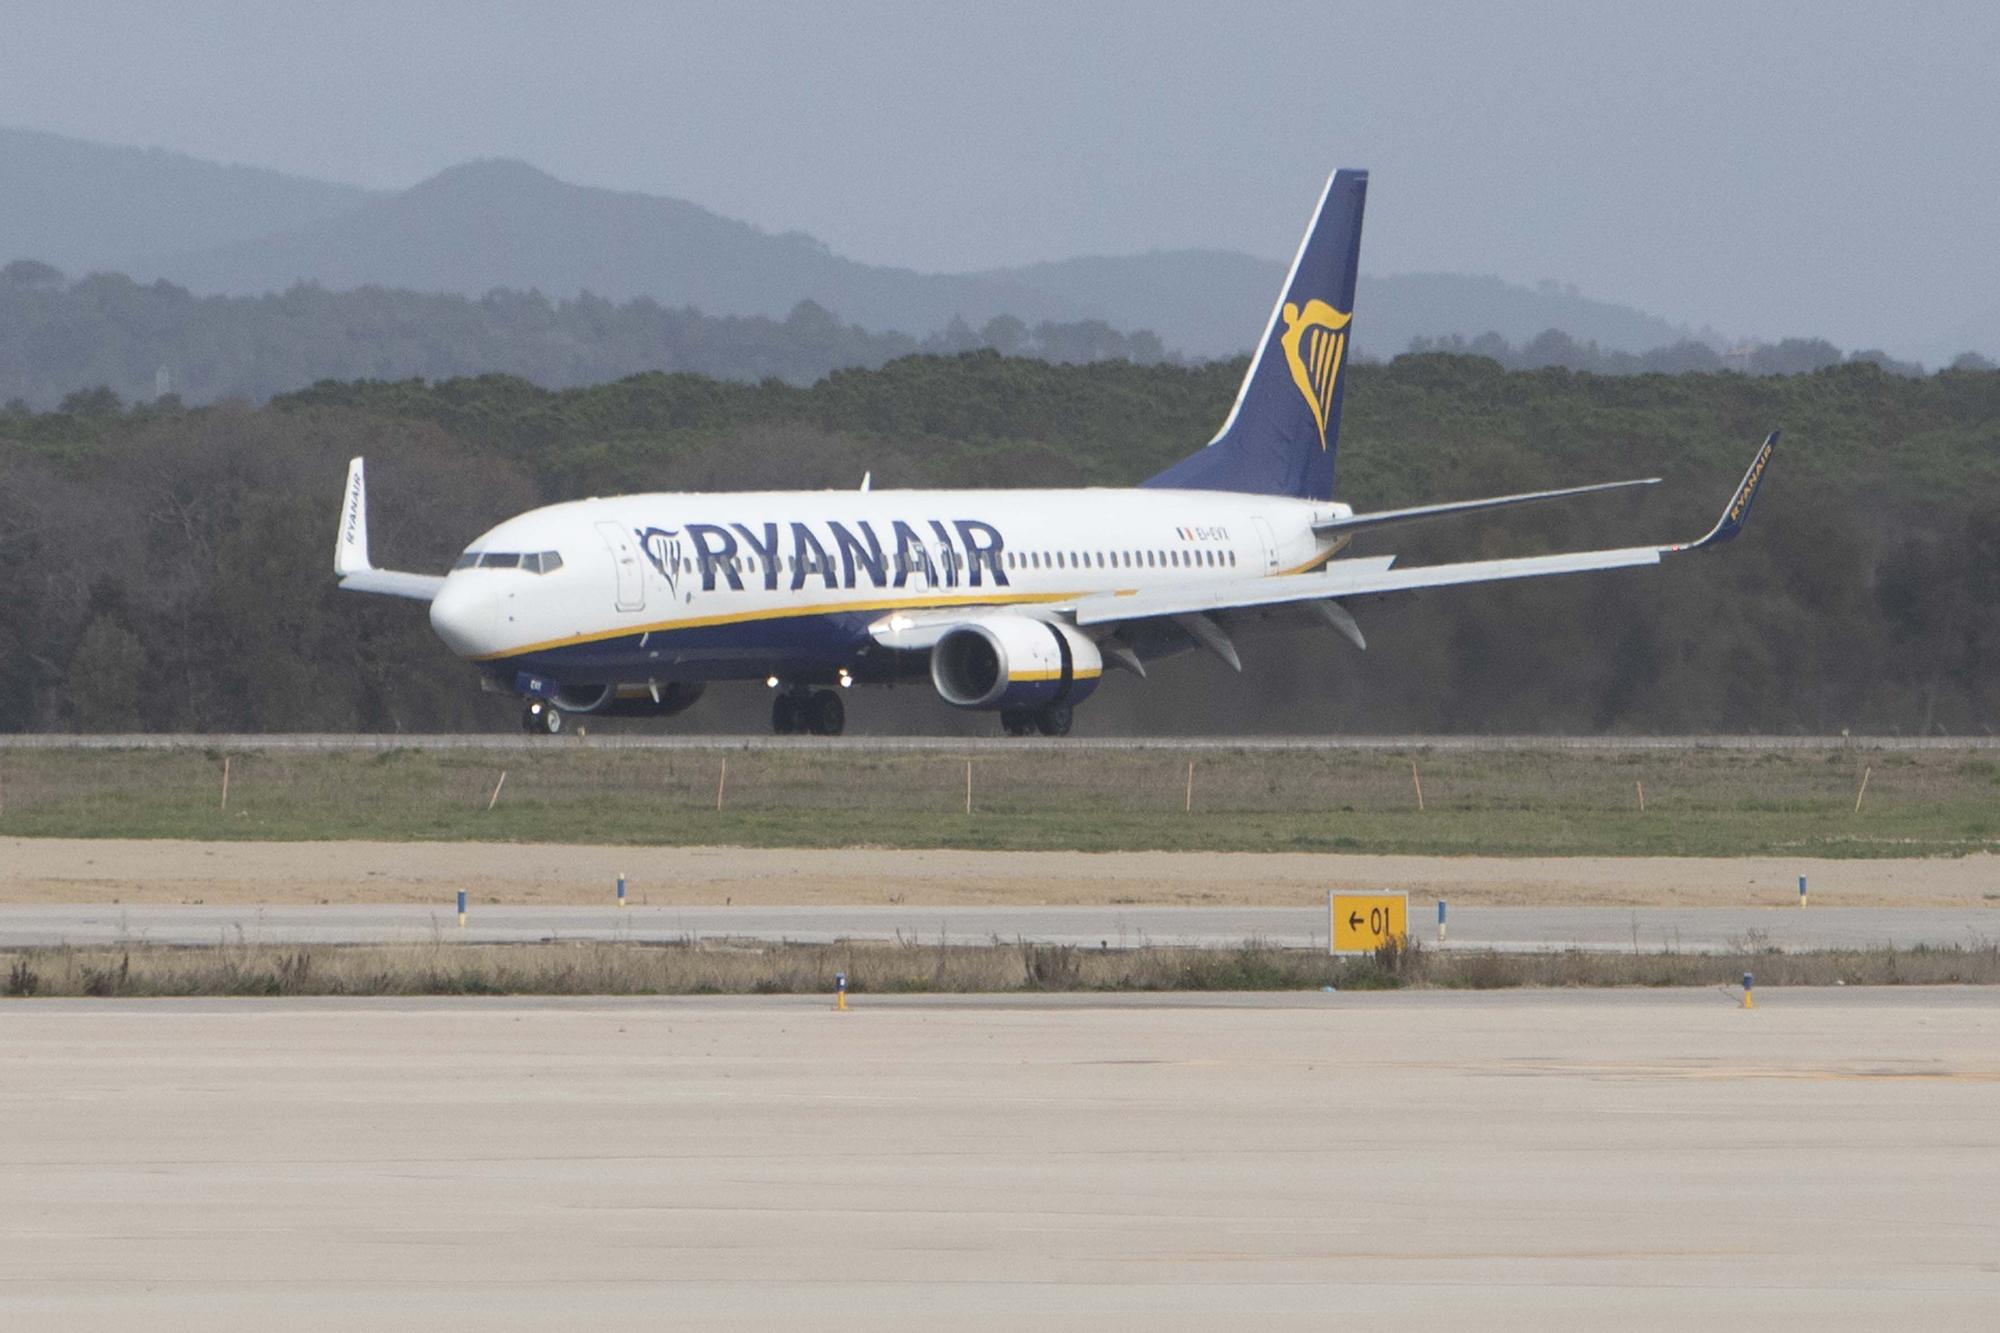 El director de l'aeroport de Girona aposta per obrir-se a noves destinacions a Espanya